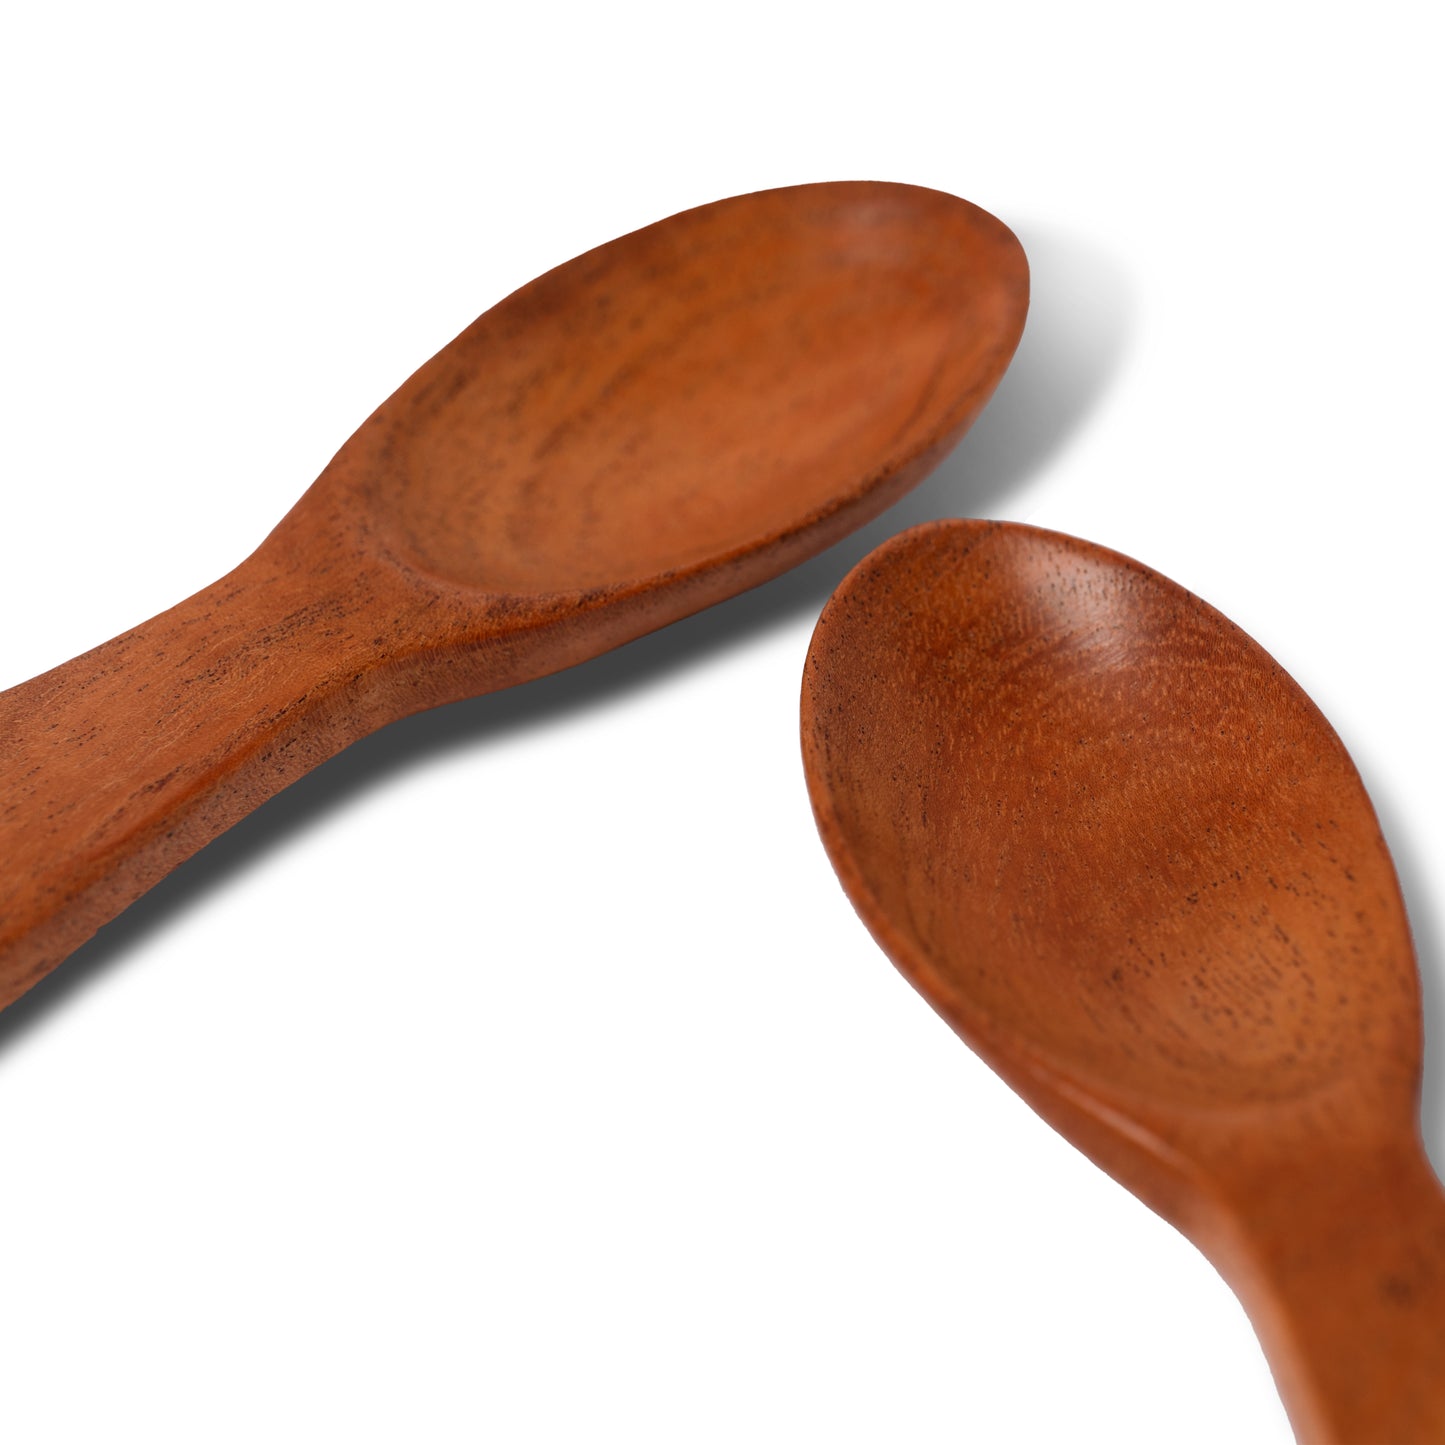 Wood Masala Spoon